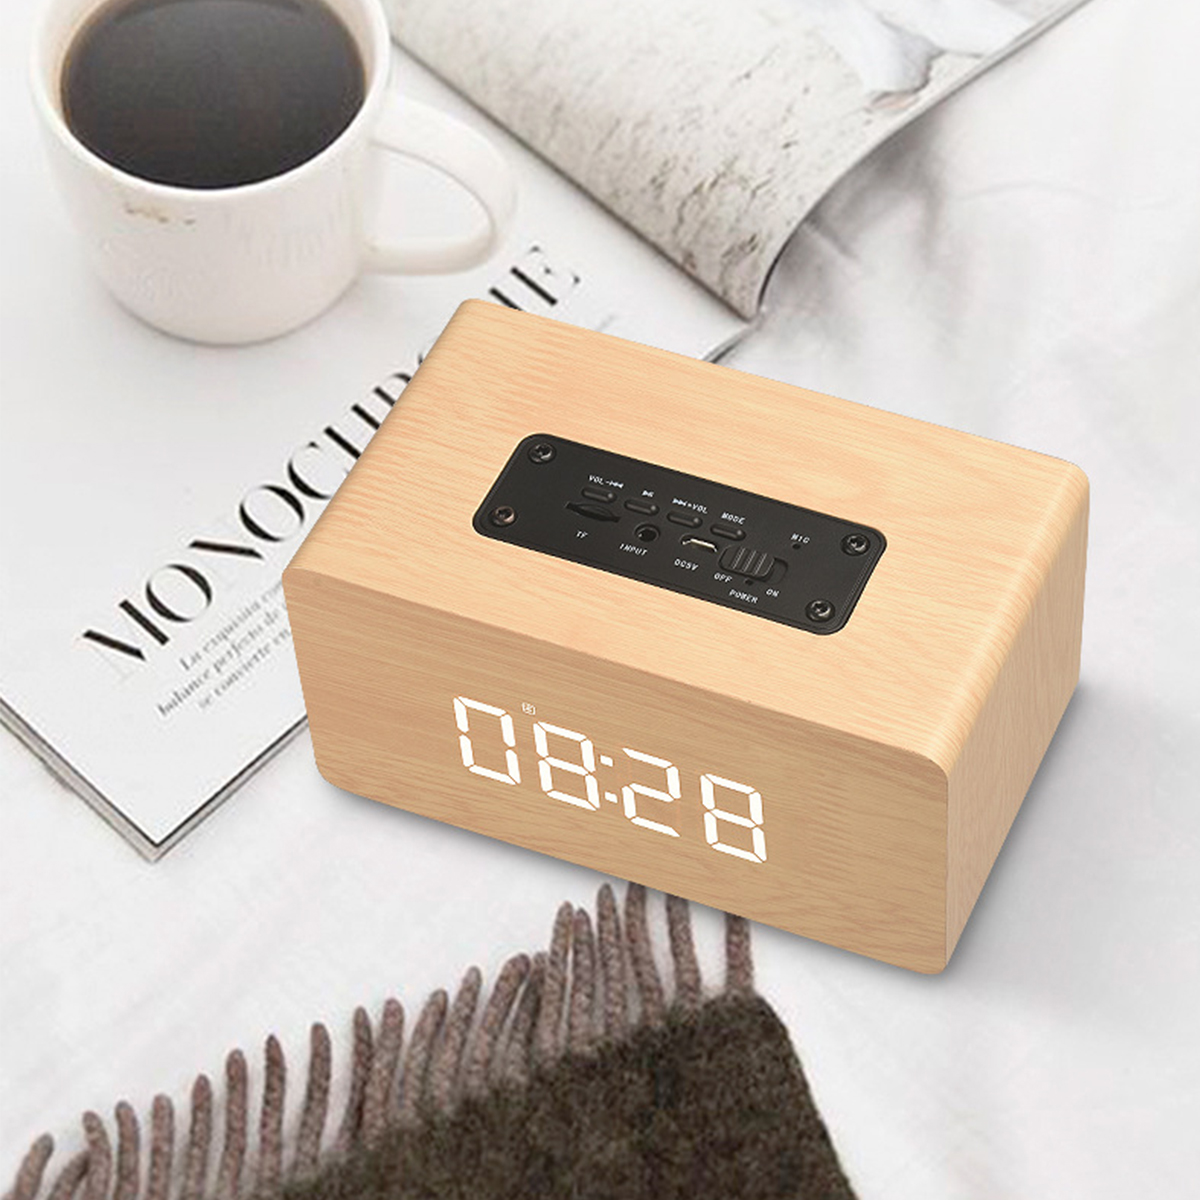 Bluetooth Holzdesign - Bluetooth-Lautsprecher, Uhrfunktion Lautsprecher Alarm - Wecker & Gelb BRIGHTAKE